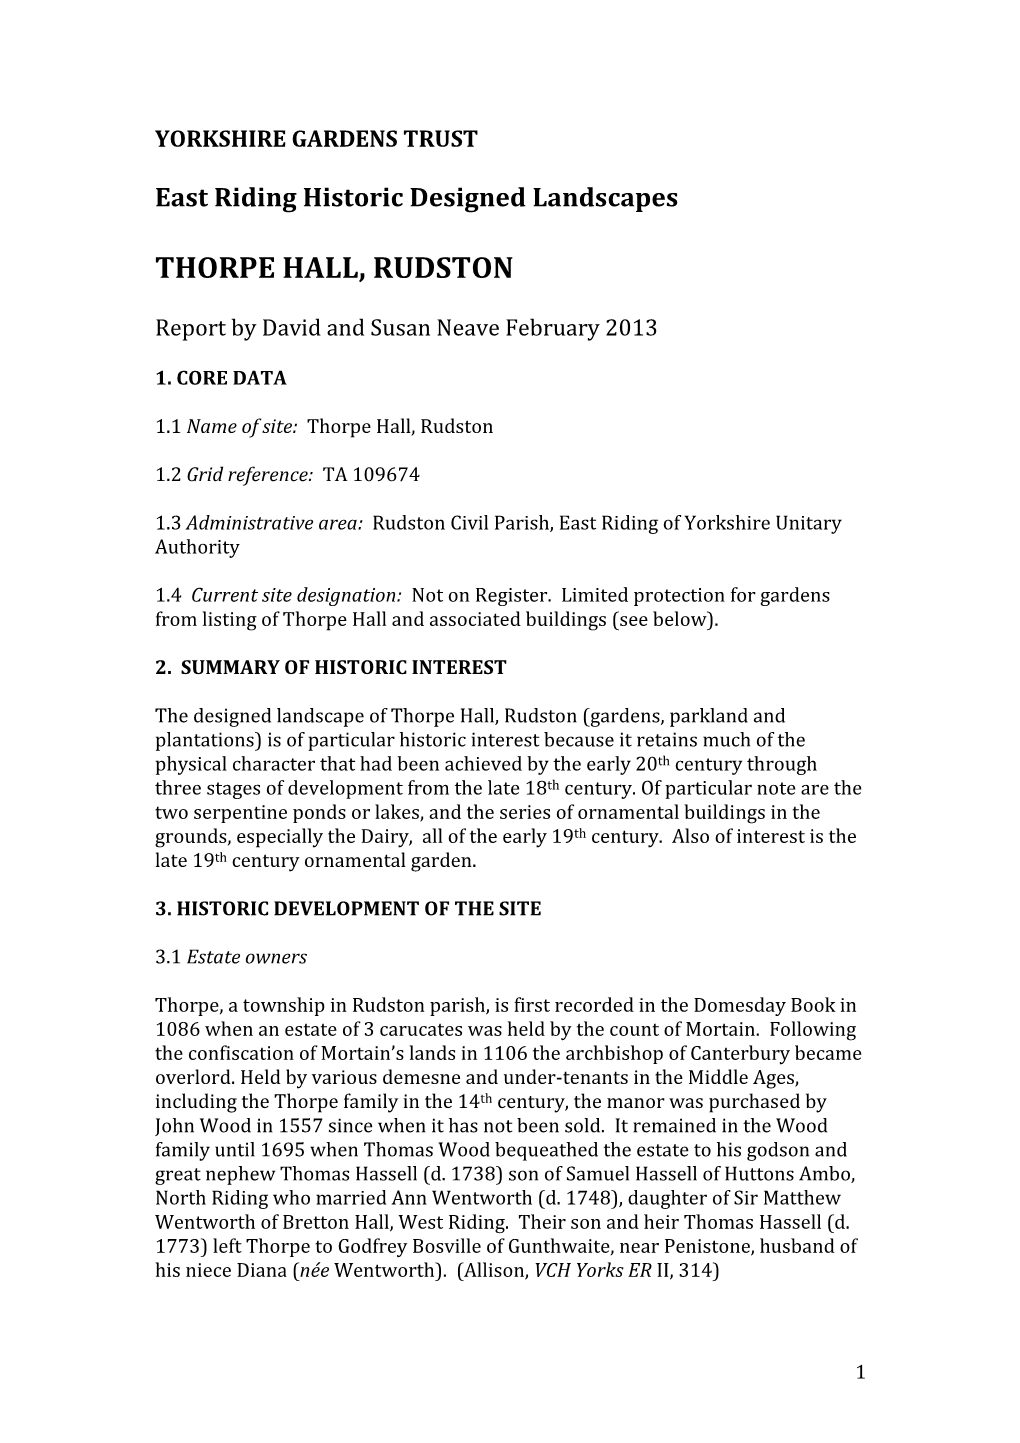 Thorpe Hall, Rudston